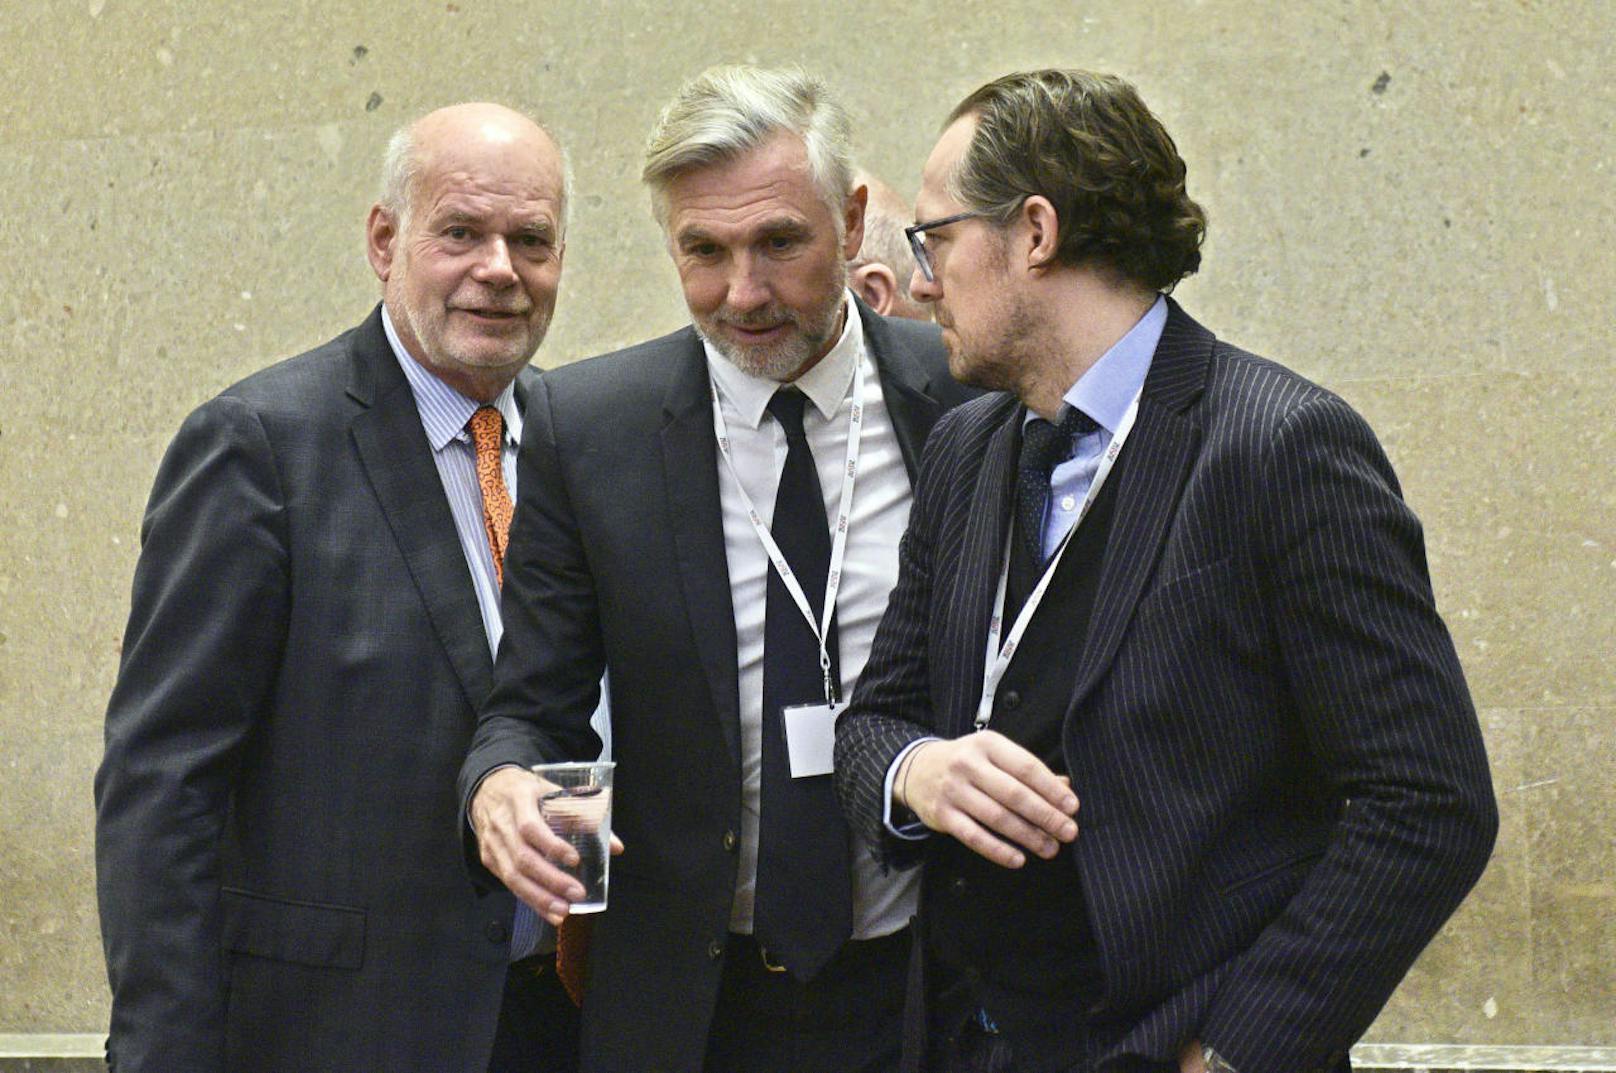 Anwalt Manfred Ainedter, Angeklagter Walter Meischberger und Anwalt Norbert Wess vor Beginn des Strafprozesses.